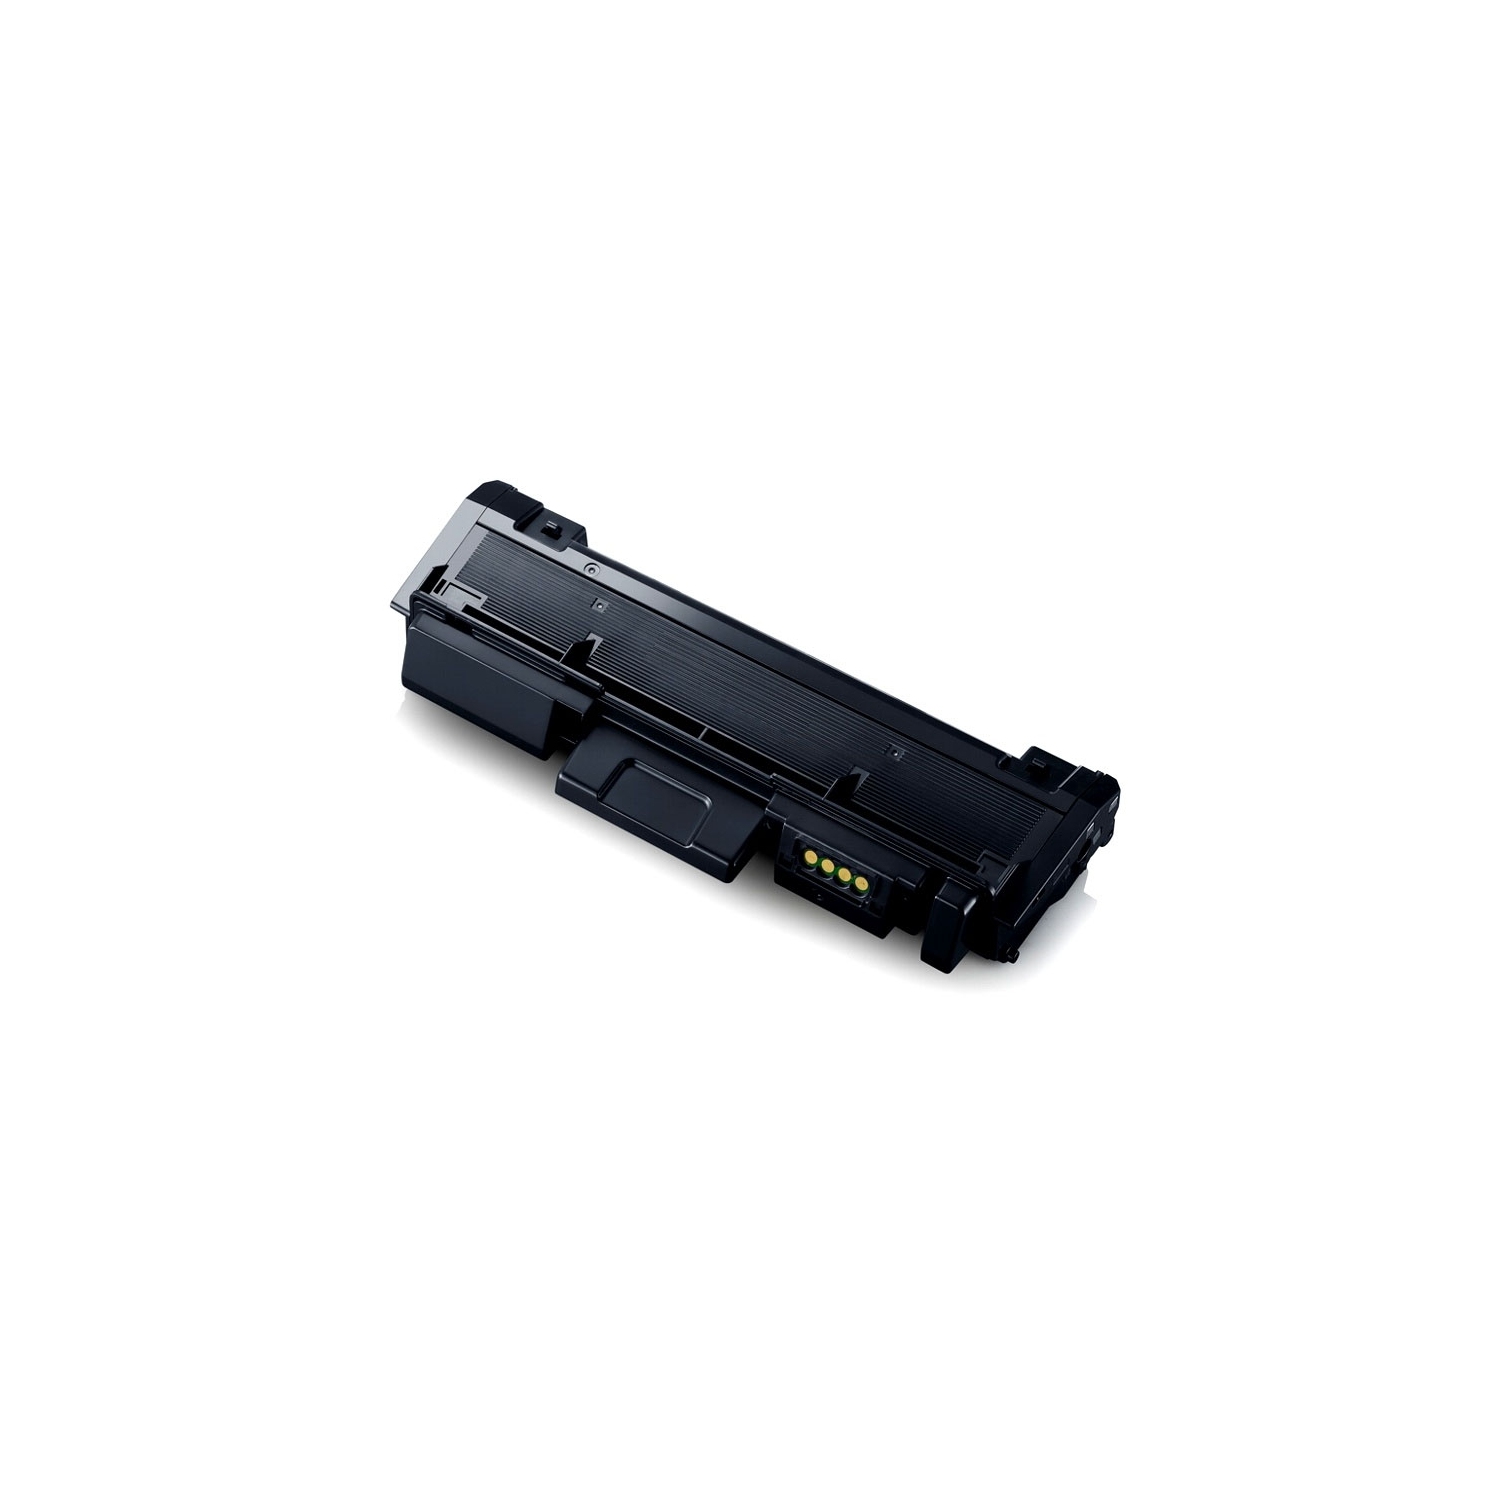 1PK MLT-D116L Compatible Toner Cartridge for Samsung Printer Compatible with: SL-M2625D SL-M2825DW SL-M2875FD SL-M2875FW SL-M2885FW Xpress SL-M2675F. M2835DW Yield: 3,000@5% Coverage